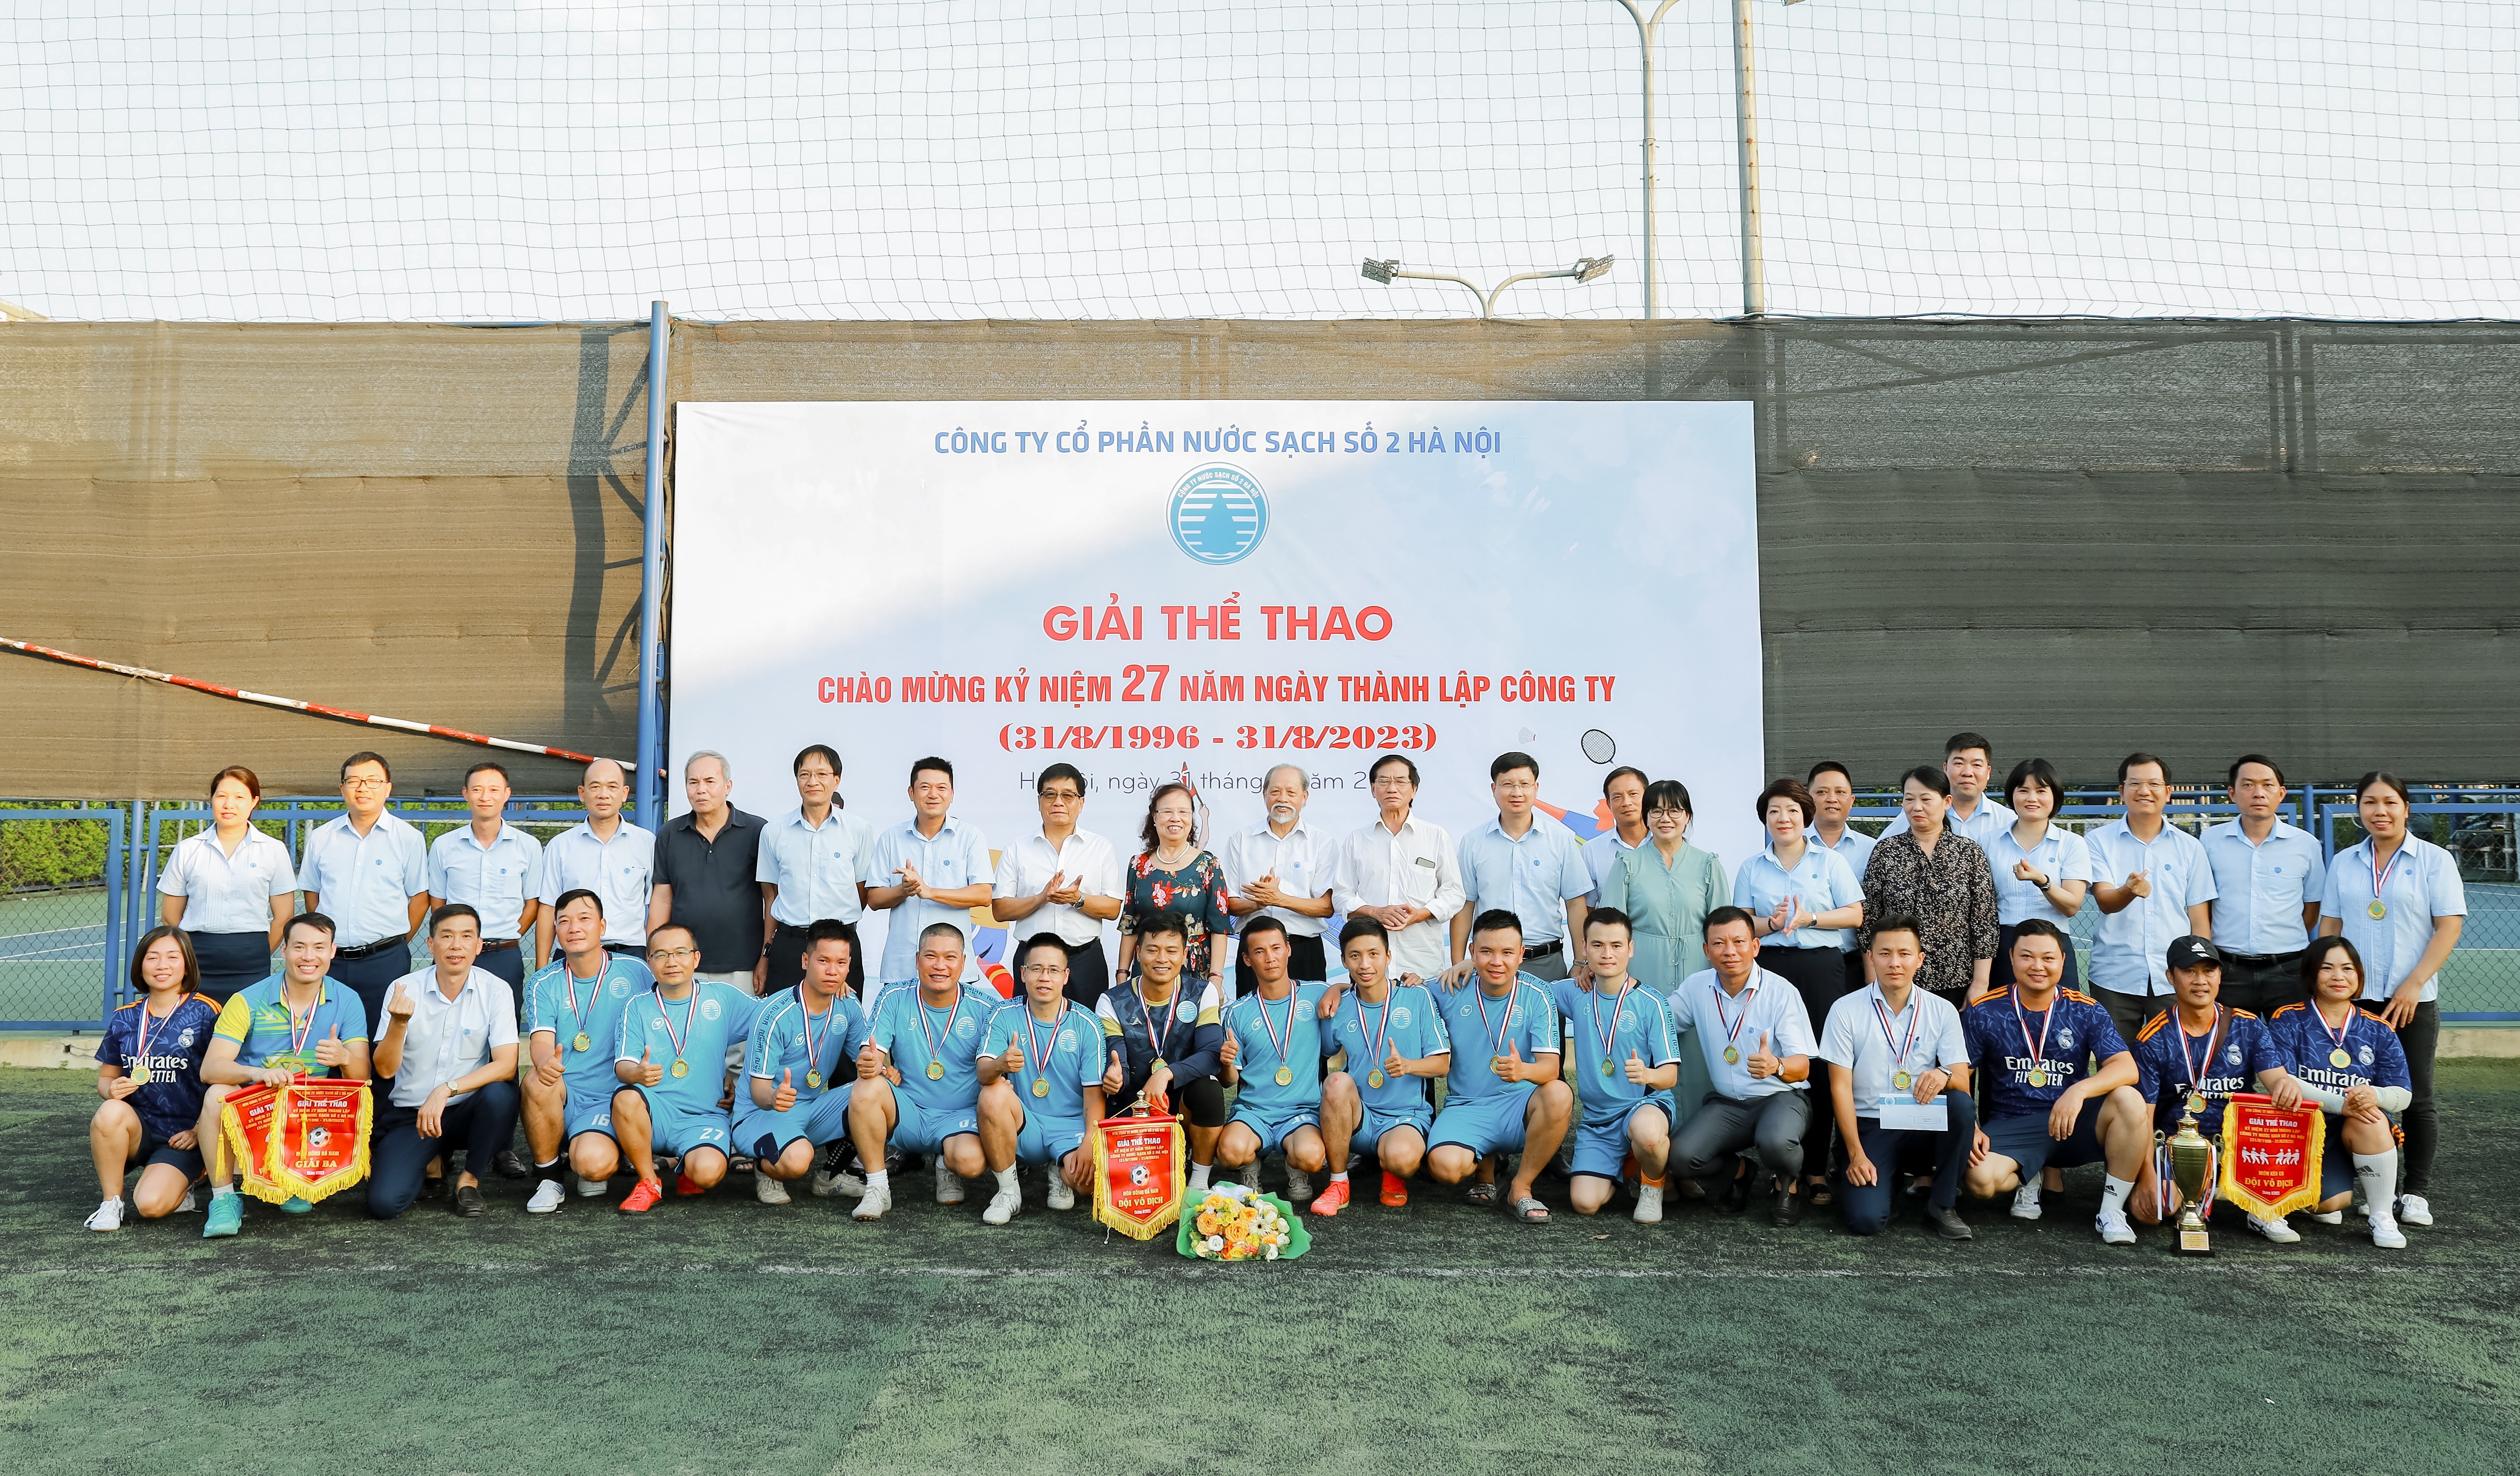 Đoàn Thanh niên Công ty Nước sạch số 2 Hà Nội tổ chức thành công giải thể thao chào mừng kỷ niệm 27 năm thành lập Công ty 31/8/1996-31/8/2023